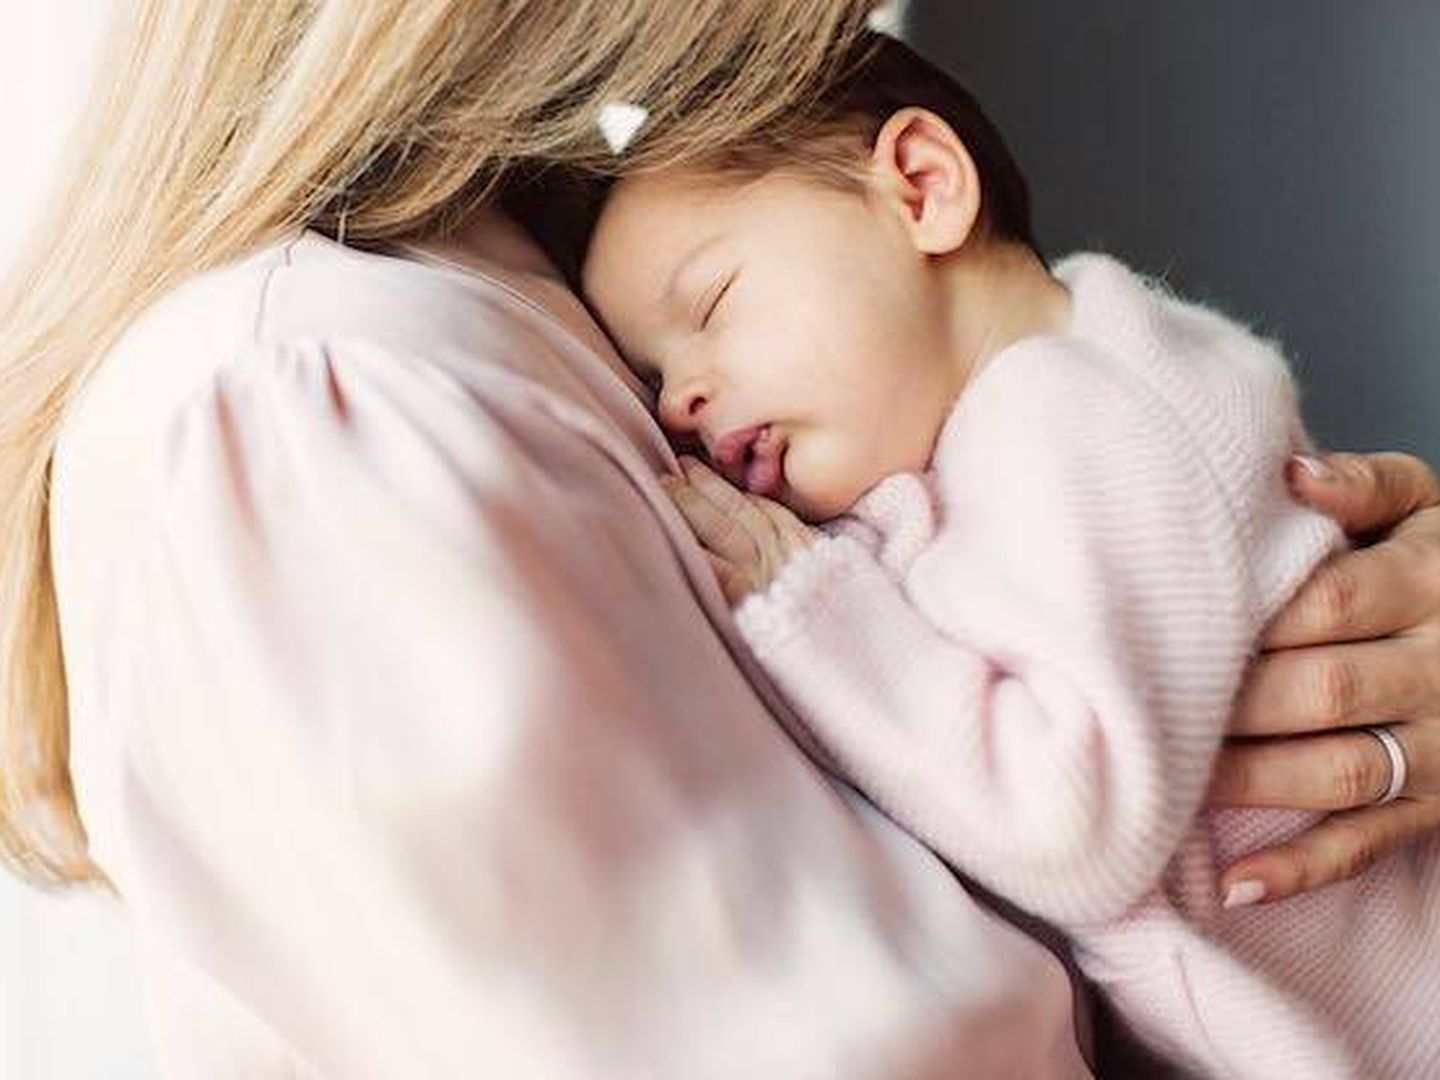  Adrienne de Suecia, dormida en brazos de su madre. (Erika Gerdemark)